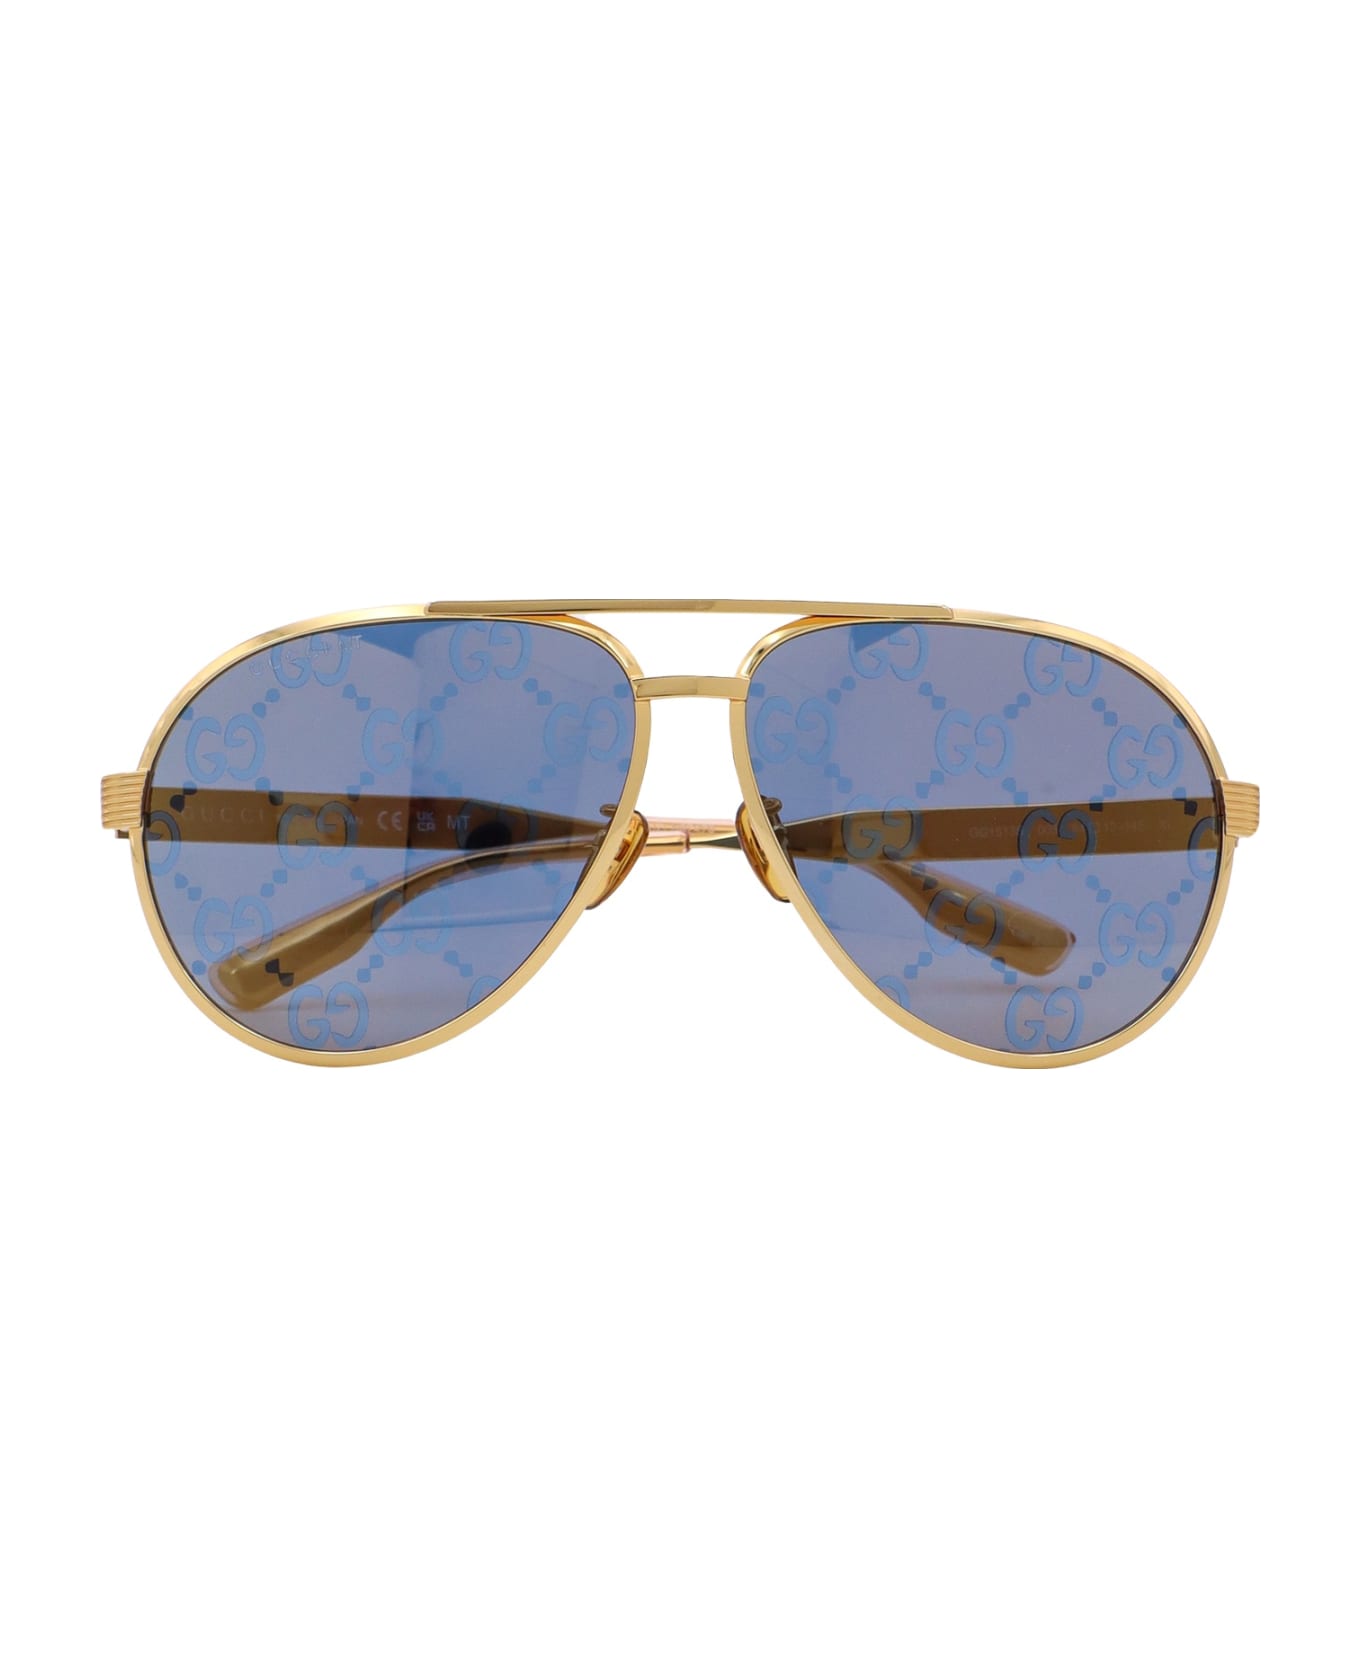 Gucci Sunglasses - Gold